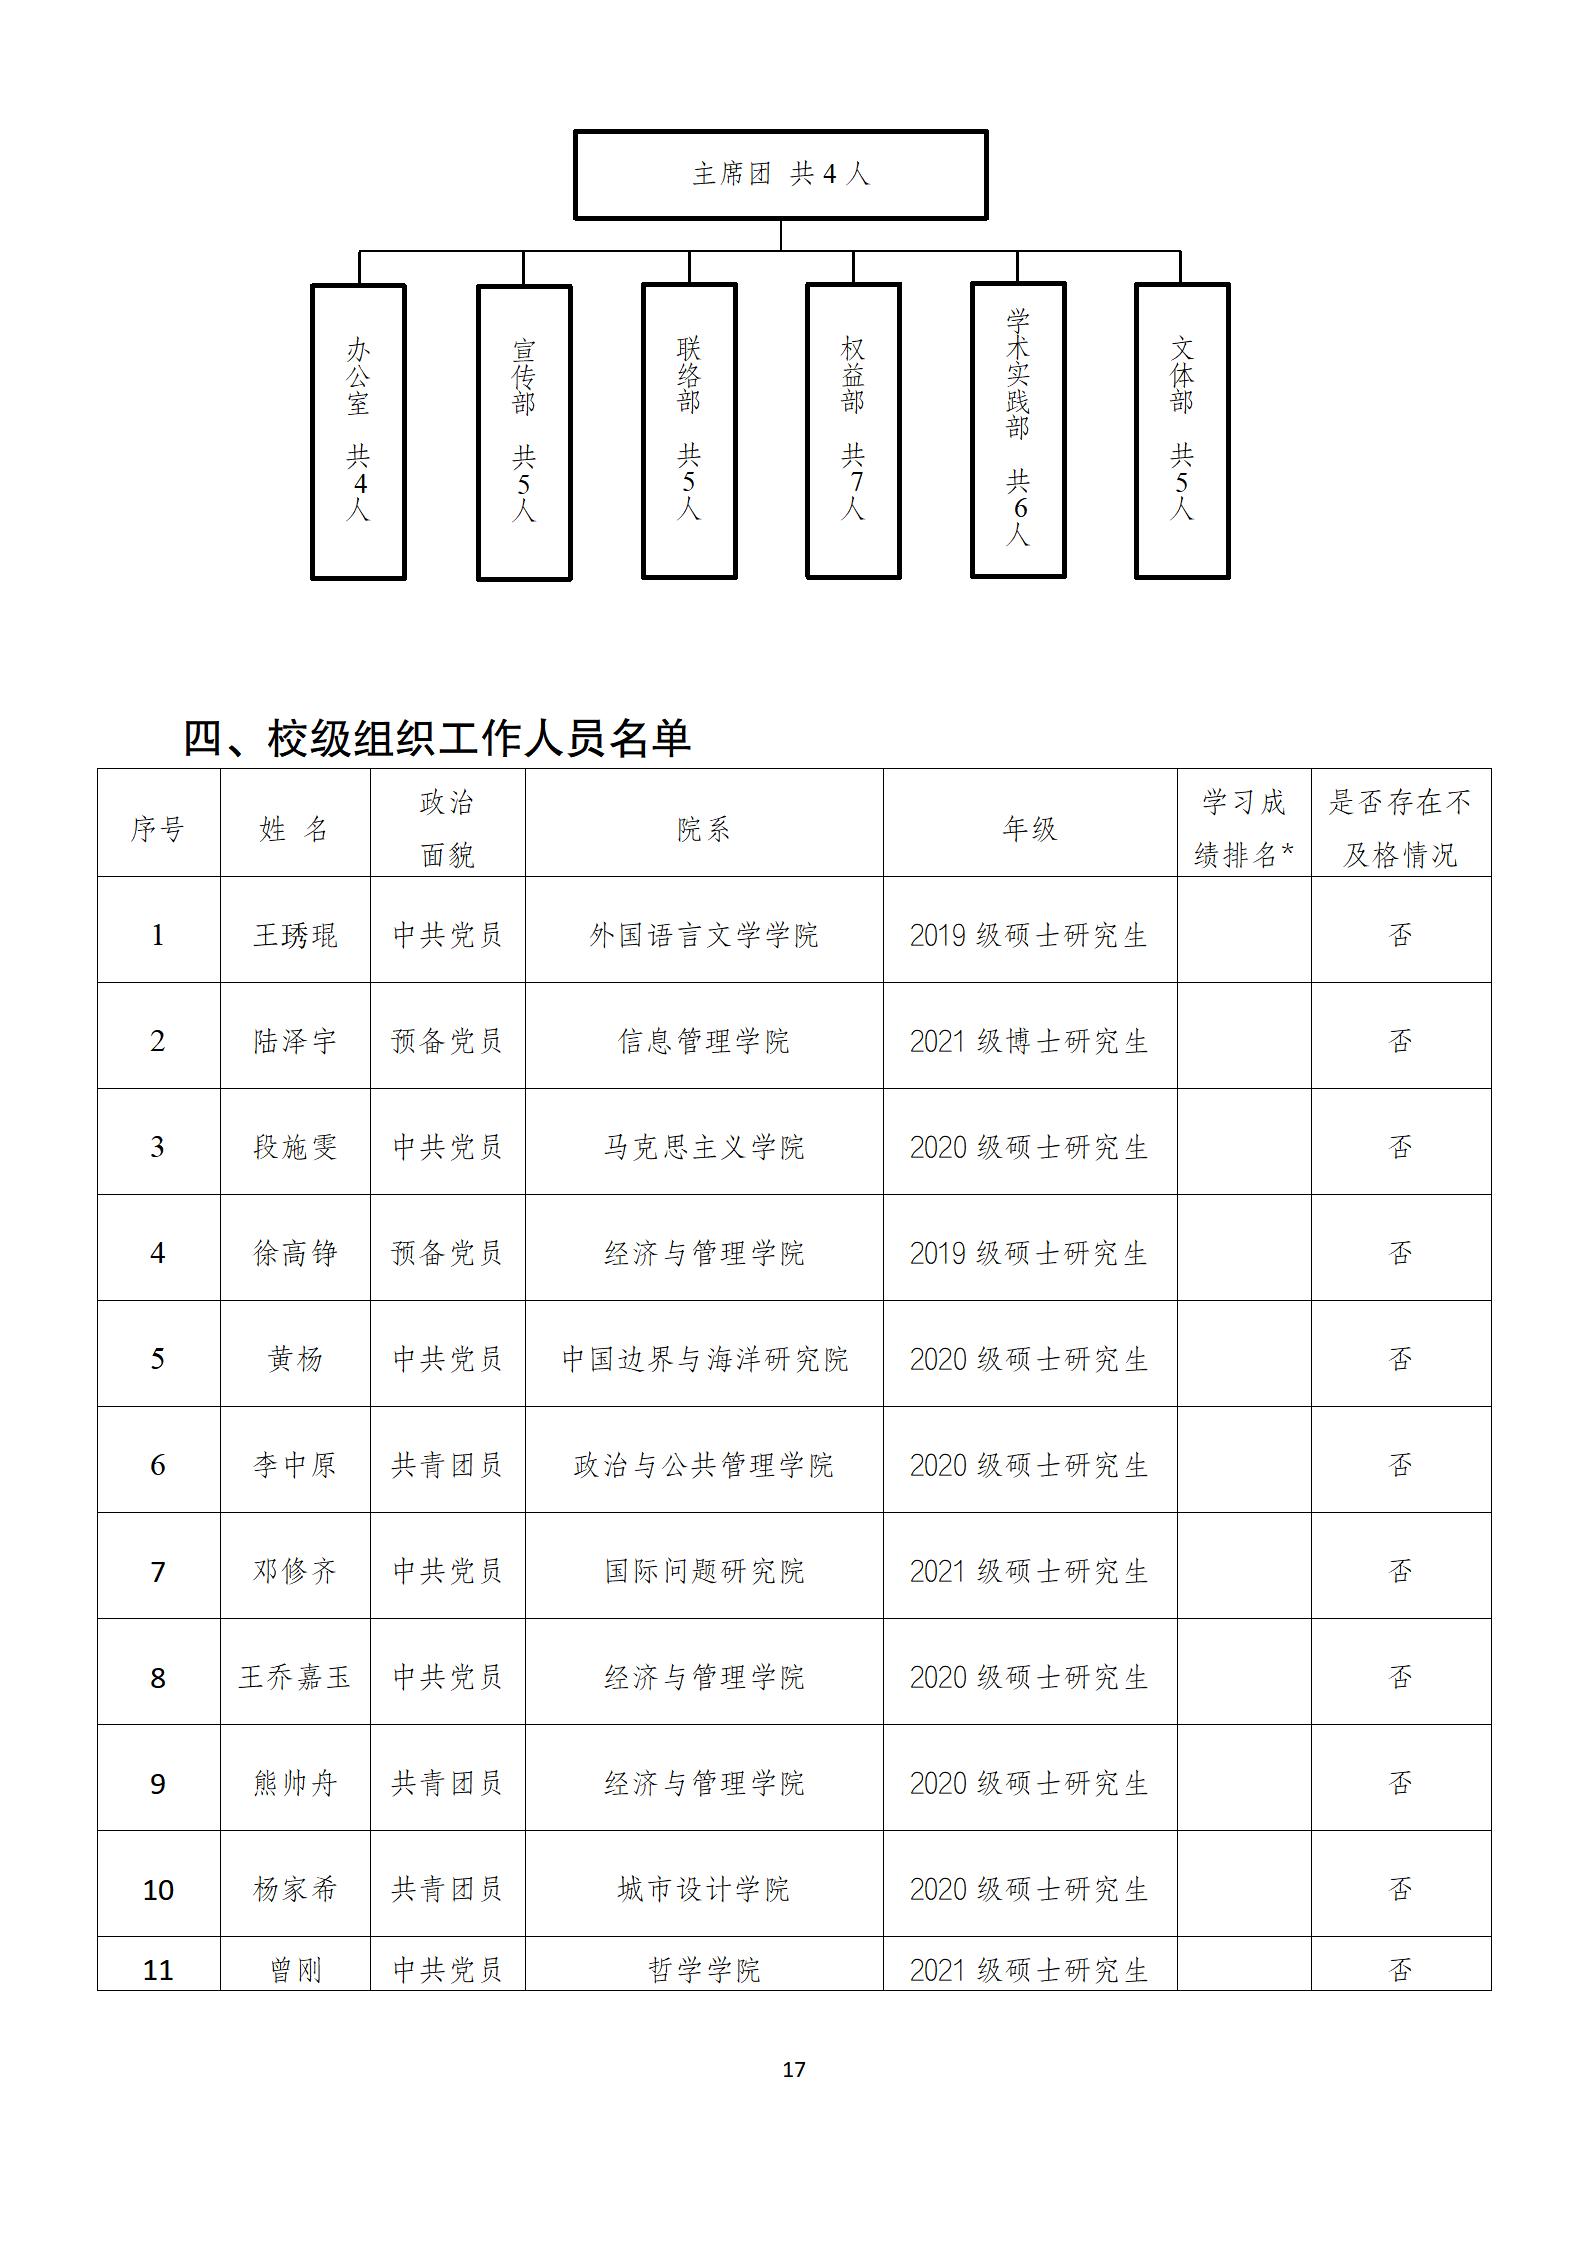 武汉大学研究生会改革情况(1)_17.jpg